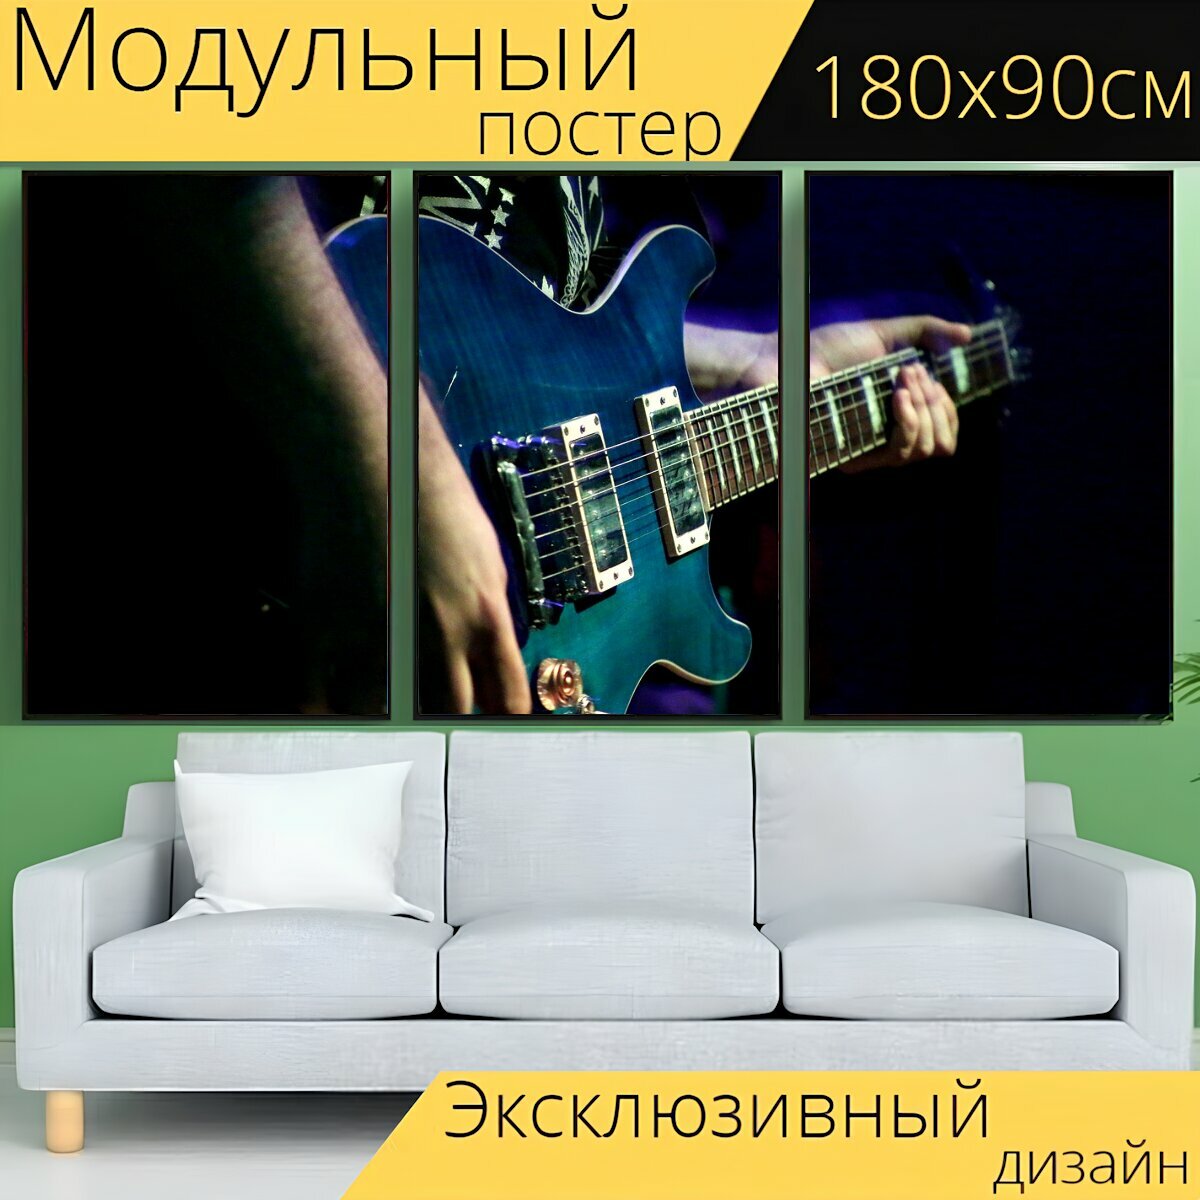 Модульный постер "Музыка, гитара, музыкант" 180 x 90 см. для интерьера